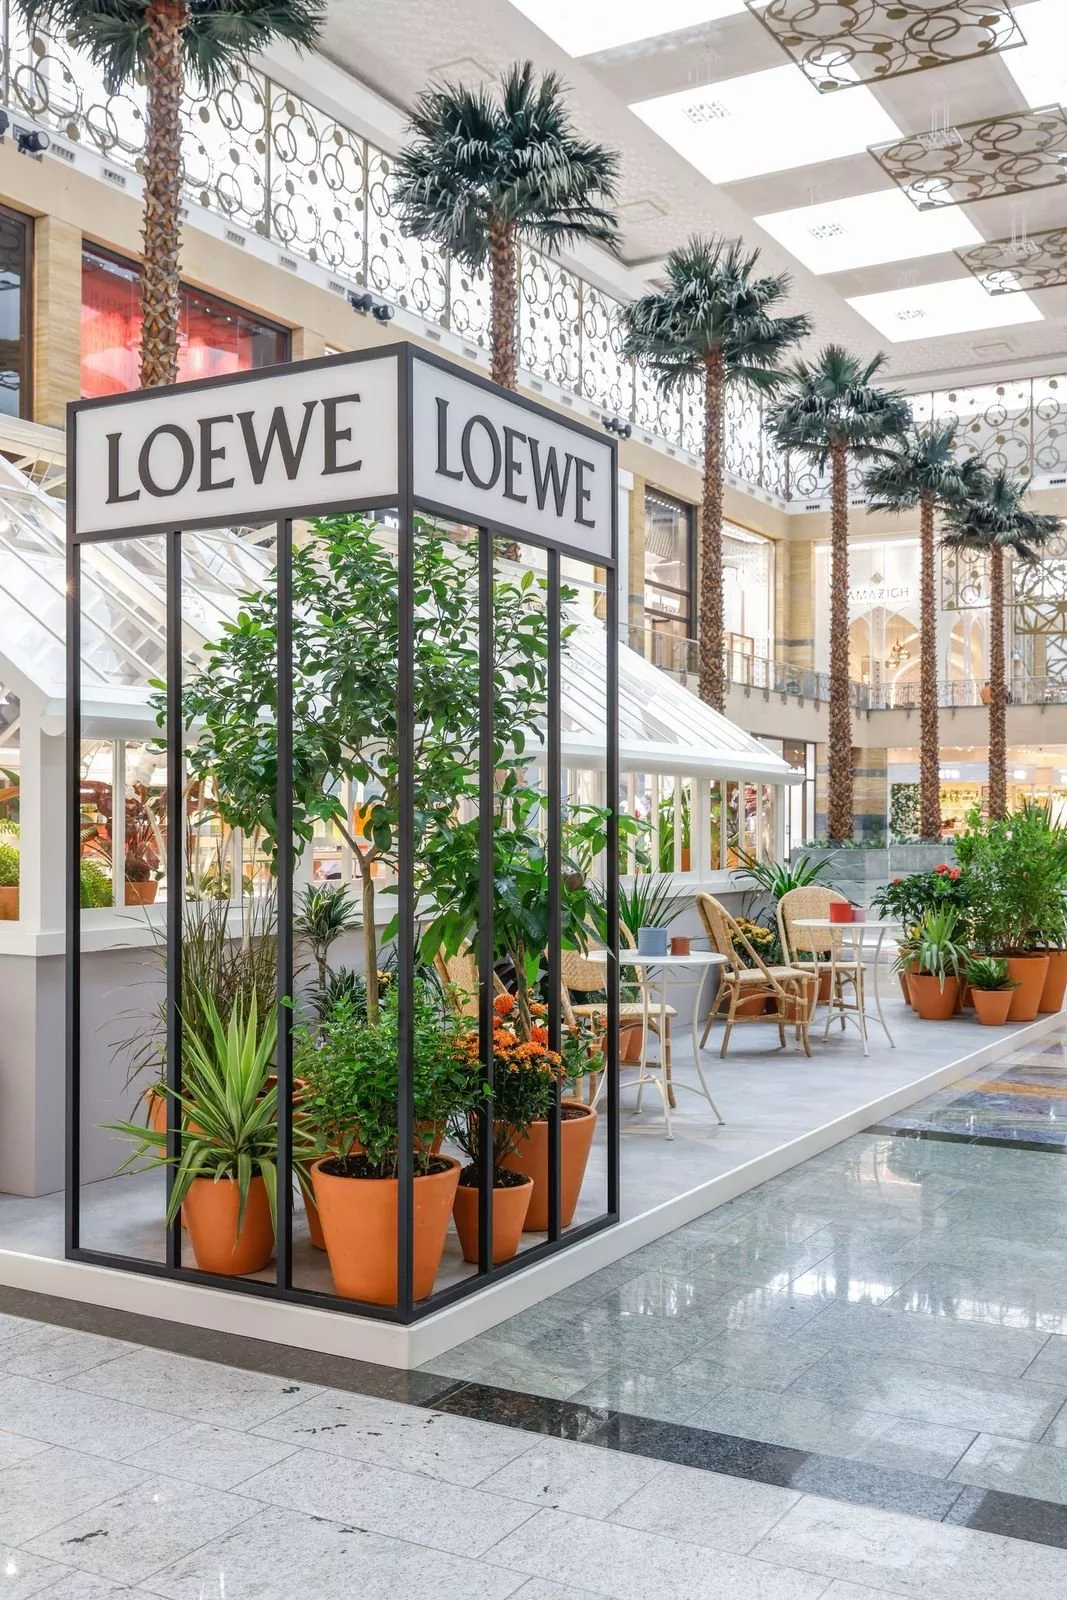 Loewe تفتتح متجر مؤقت مستوحى من البيوت الزراعية الزجاجية في سيتي سنتر مردف